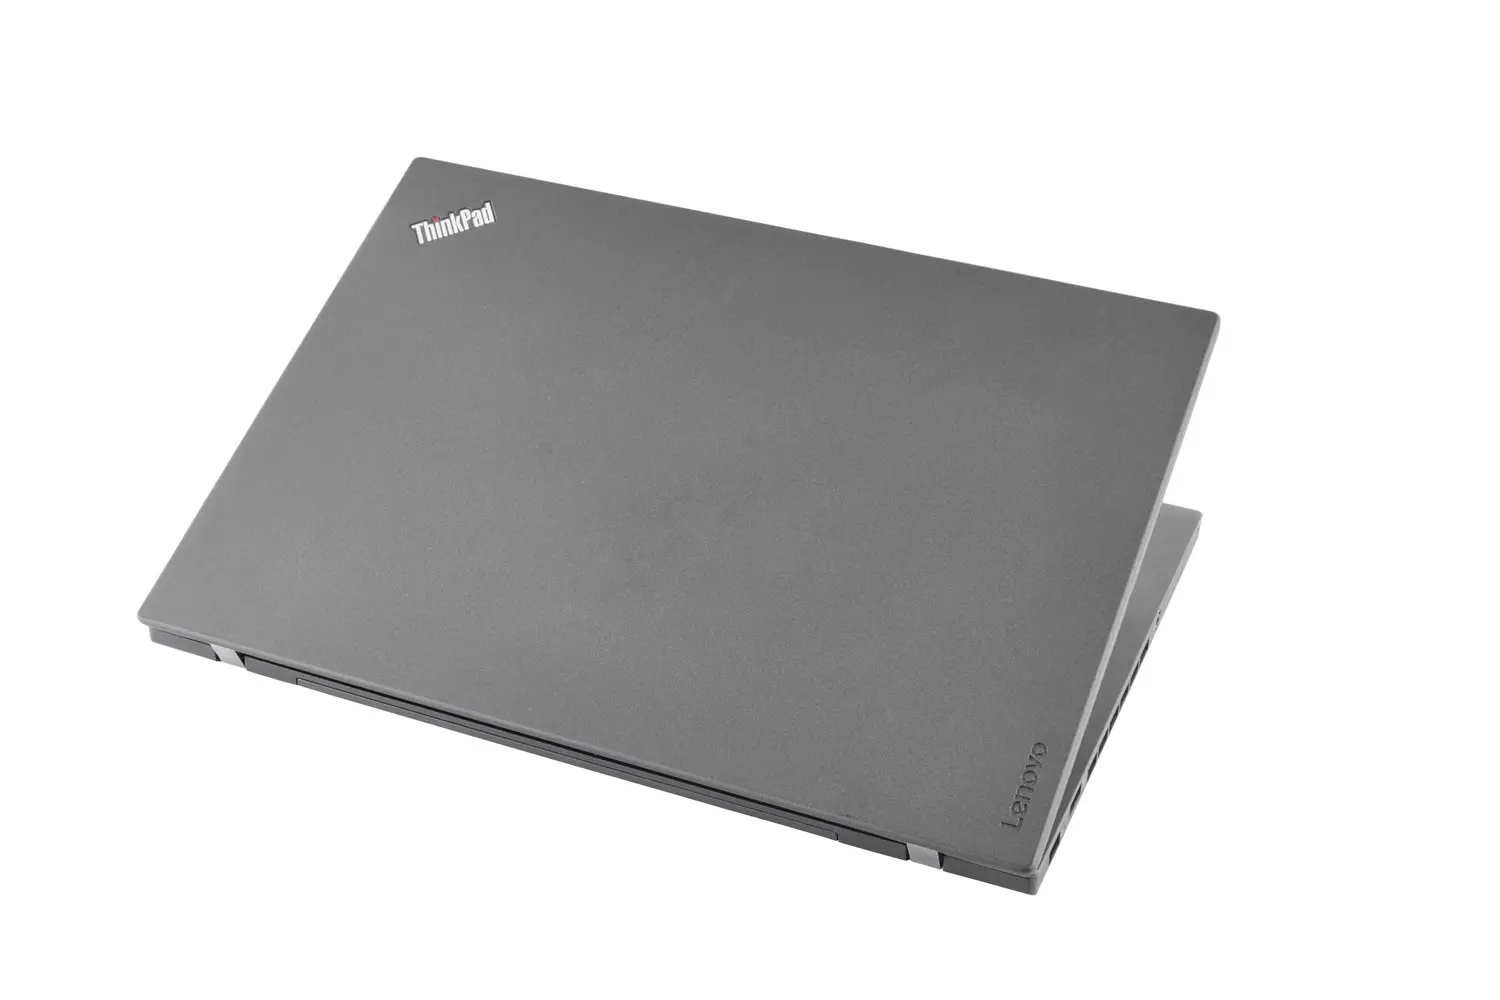 Lenovo ThinkPad T460p, i7, 14 Zoll WQHD IPS, 32GB, 250GB SSD, Webcam, beleuchtete Tastatur, Windows 10 Pro